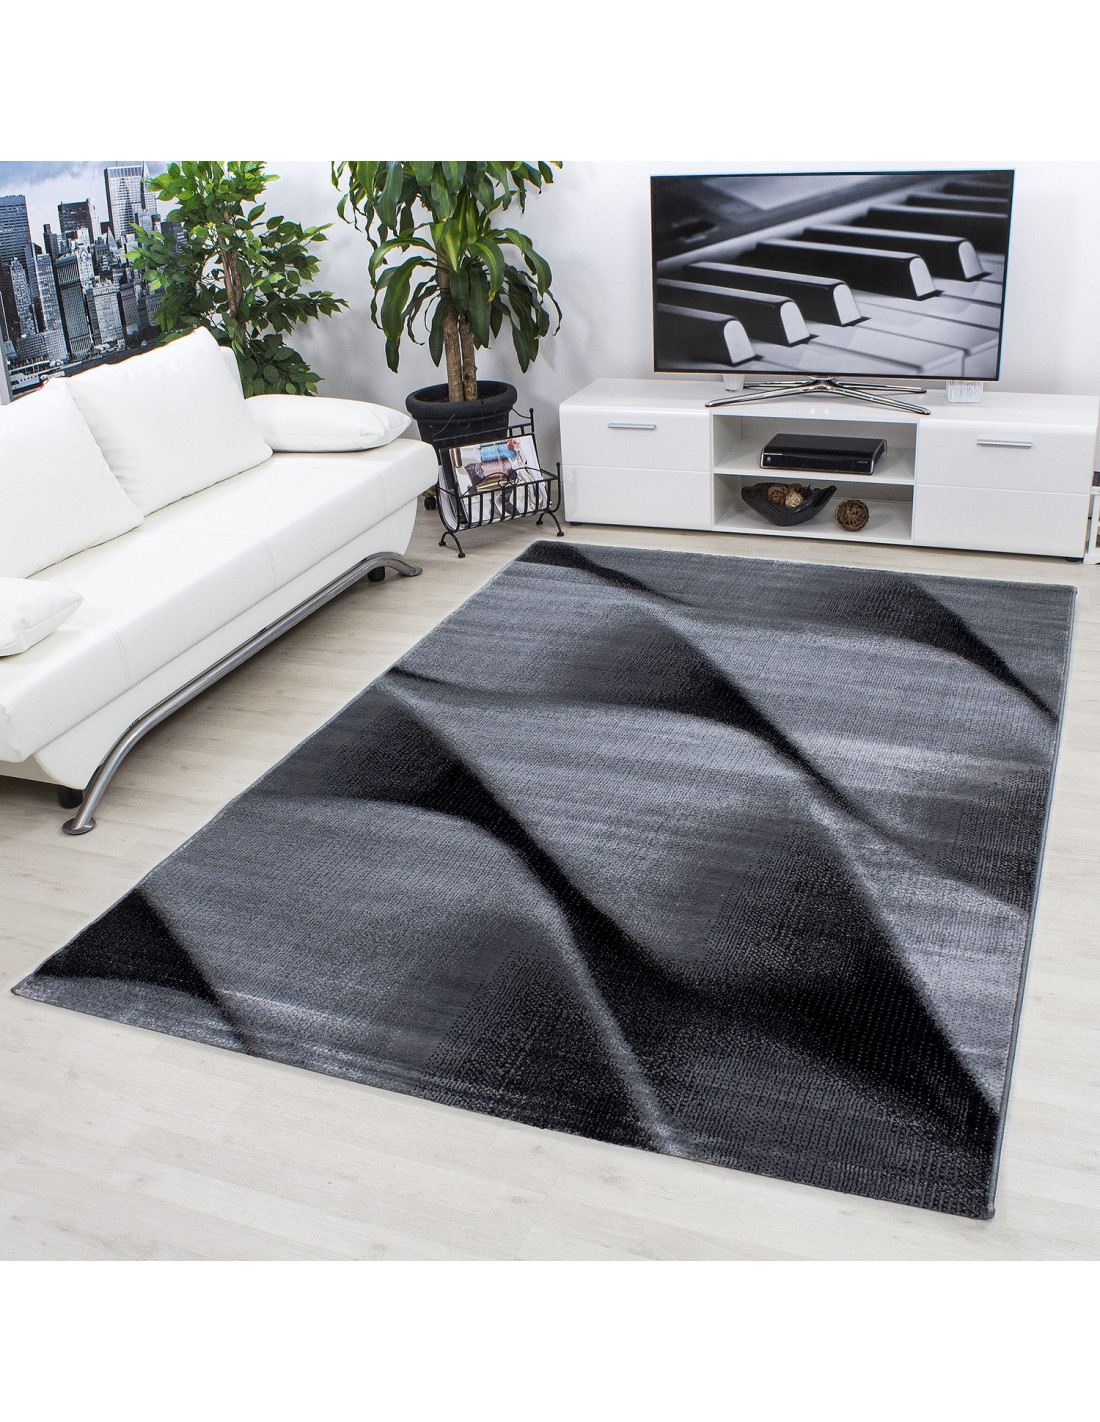 Modern designer living room rug Parma 9240 black